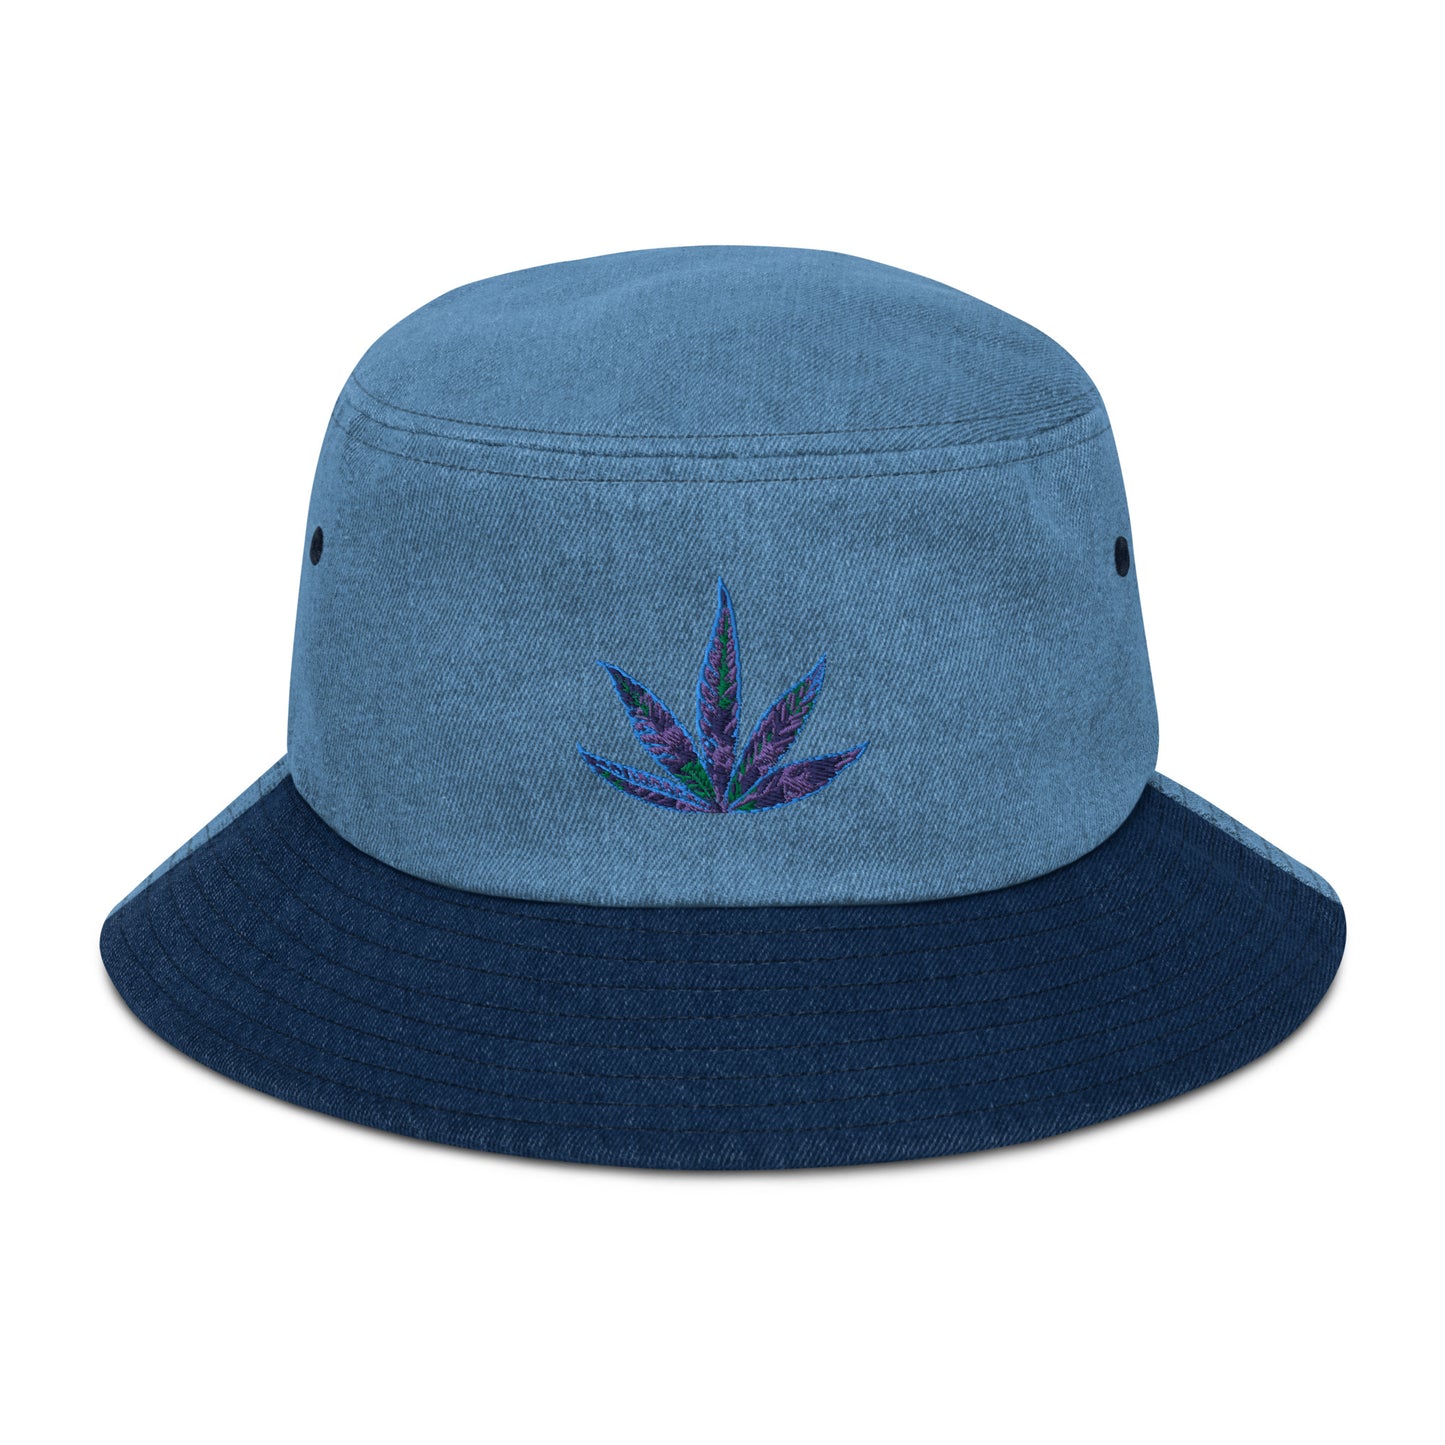 Ndica 420 Denim bucket hat